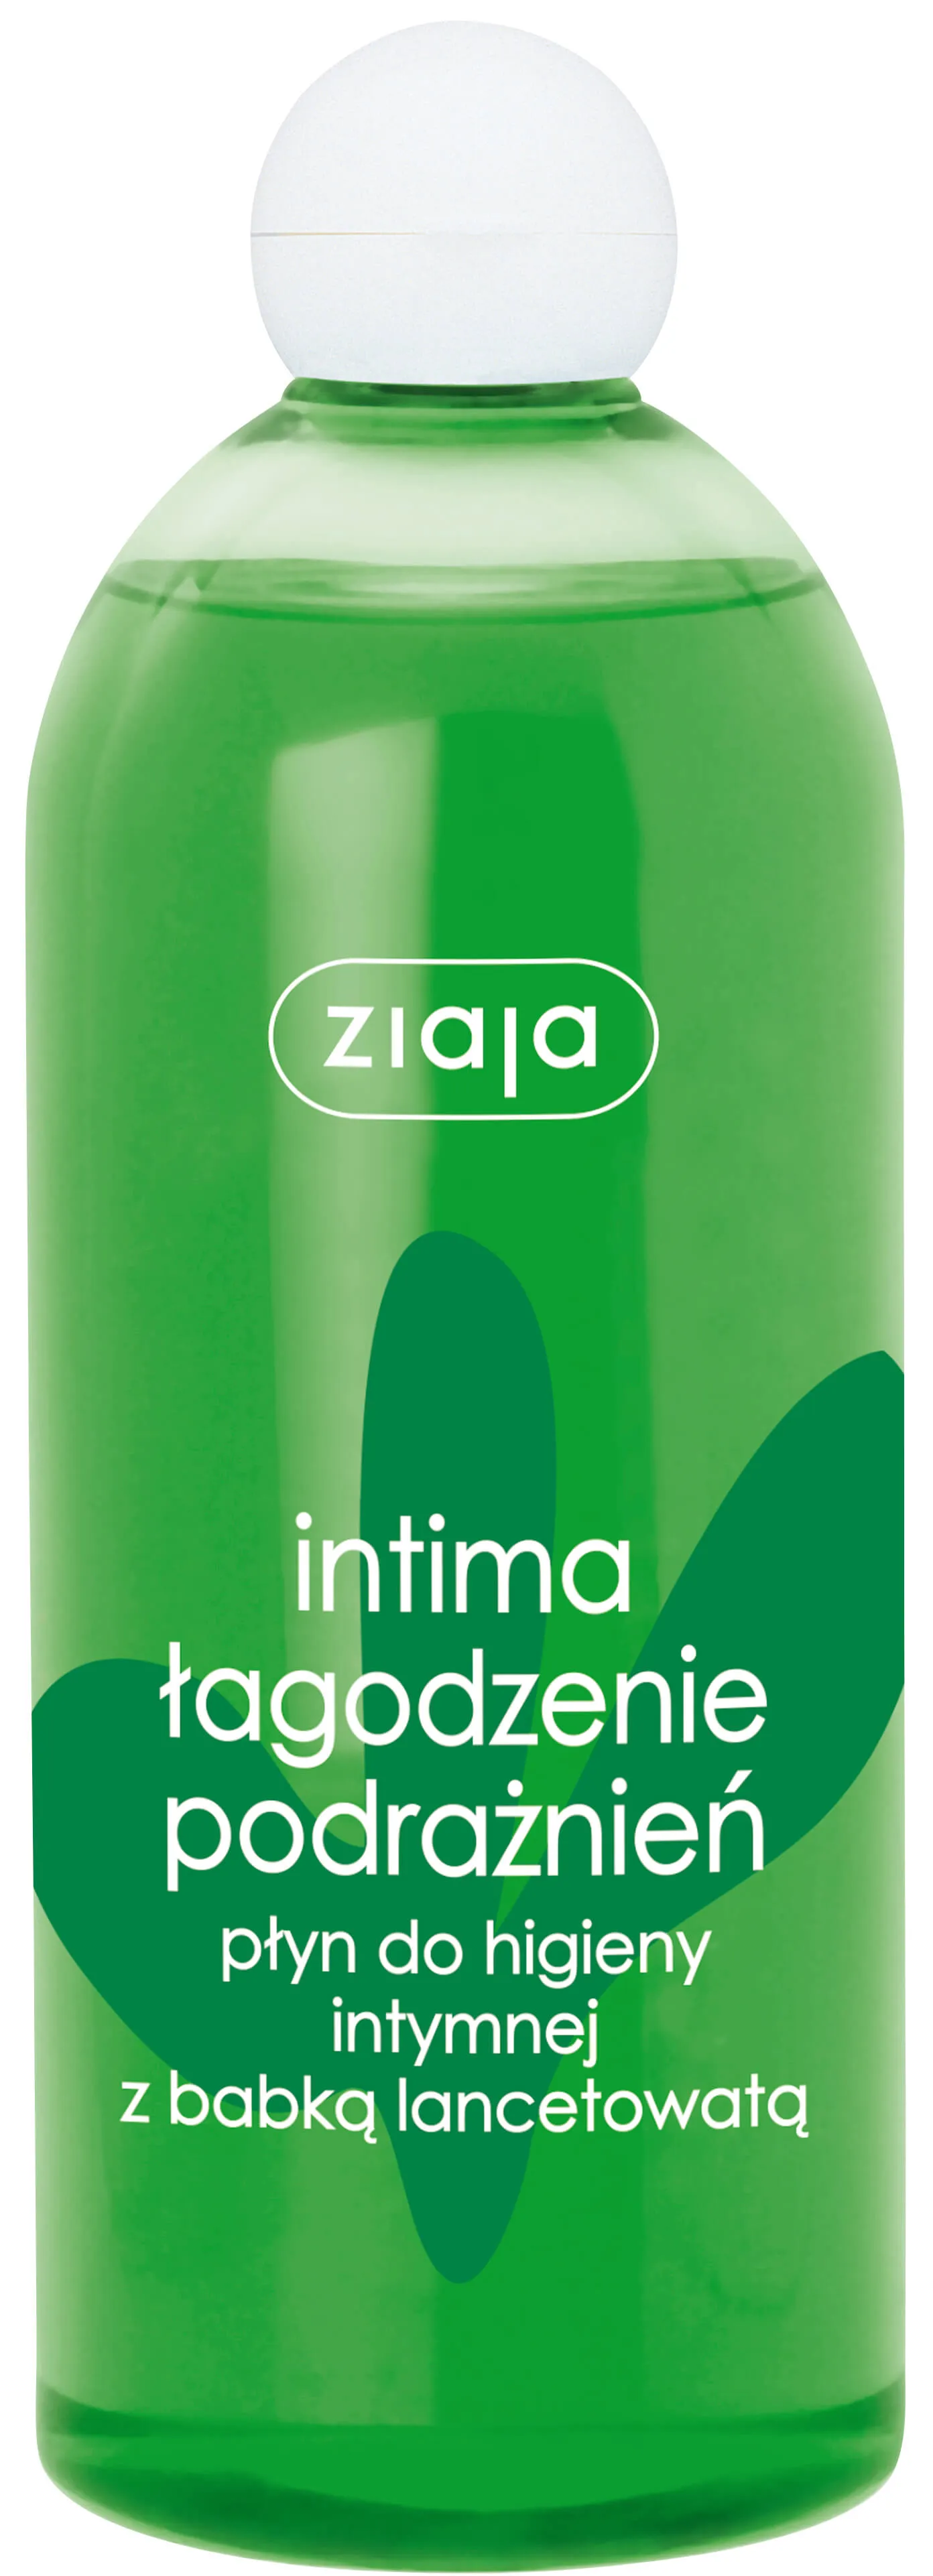 Ziaja Intima babka lancetowata, płyn do higieny intymnej , 500 ml